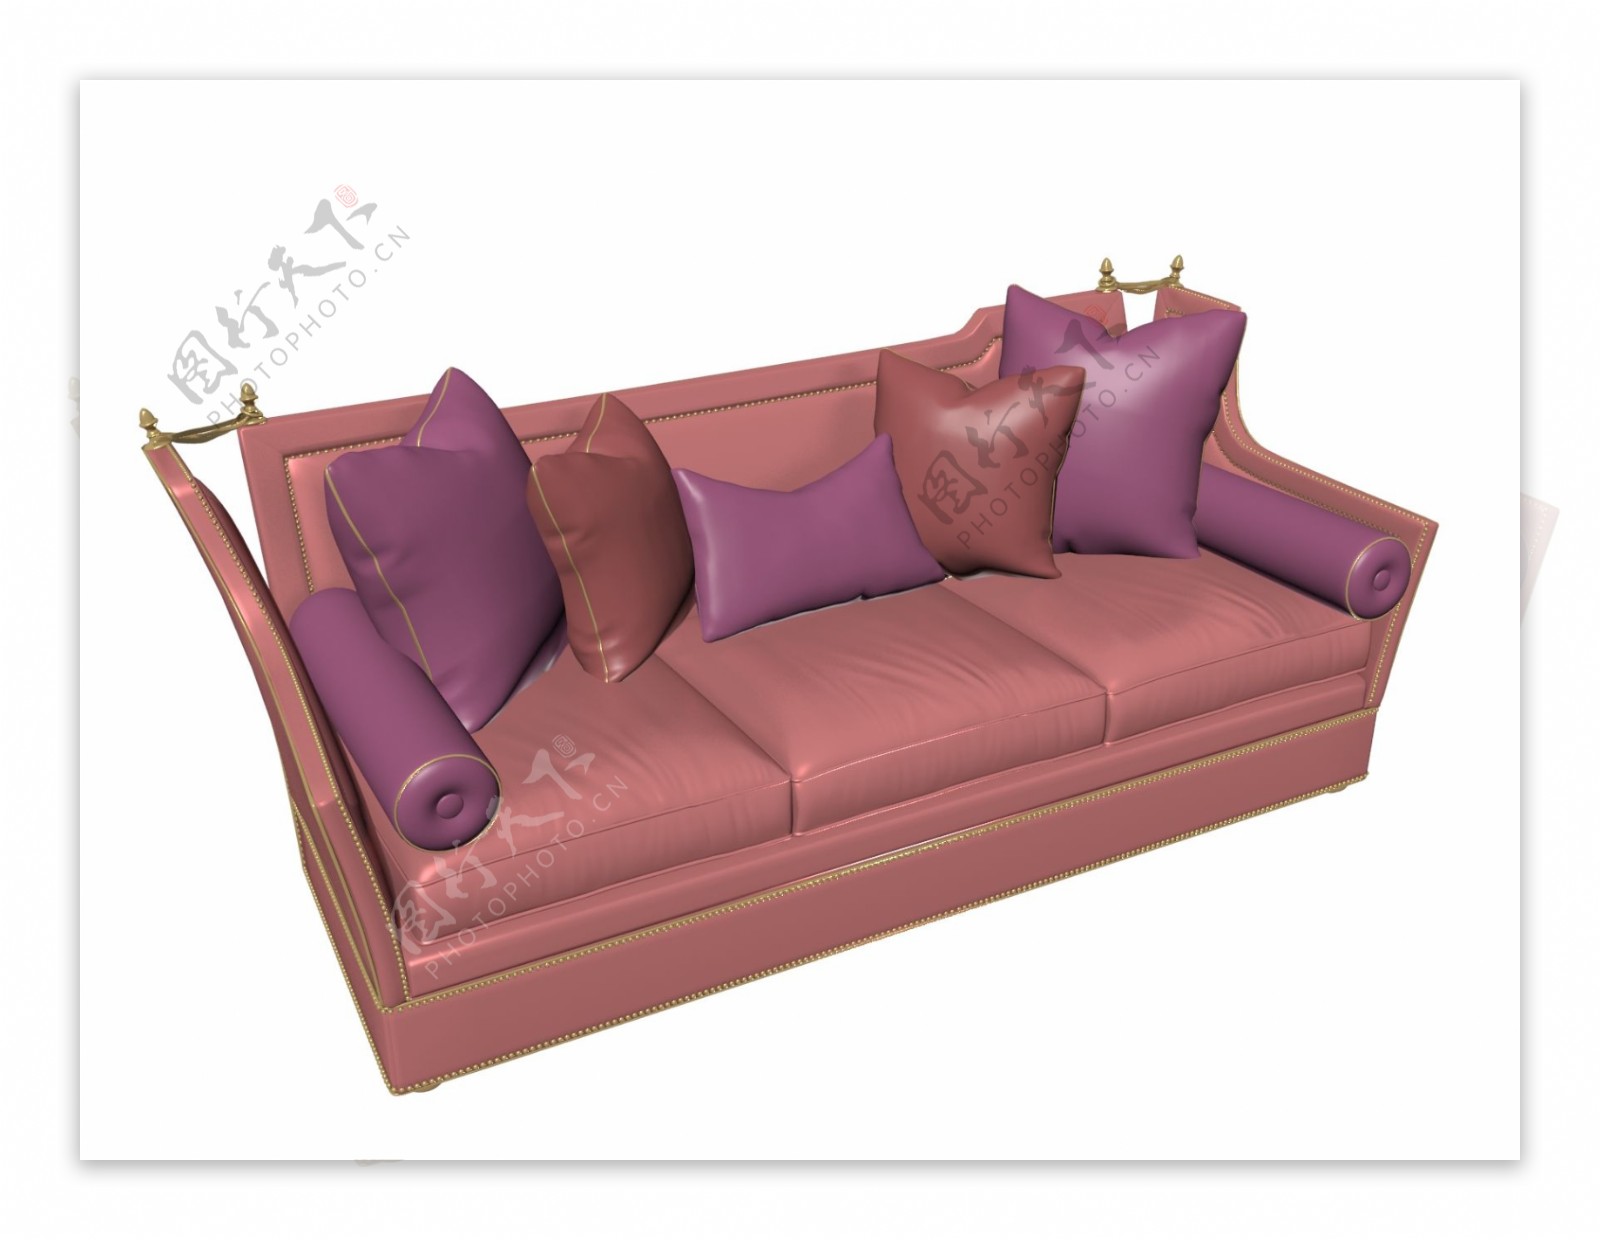 精致沙发椅子3dmax软件模型